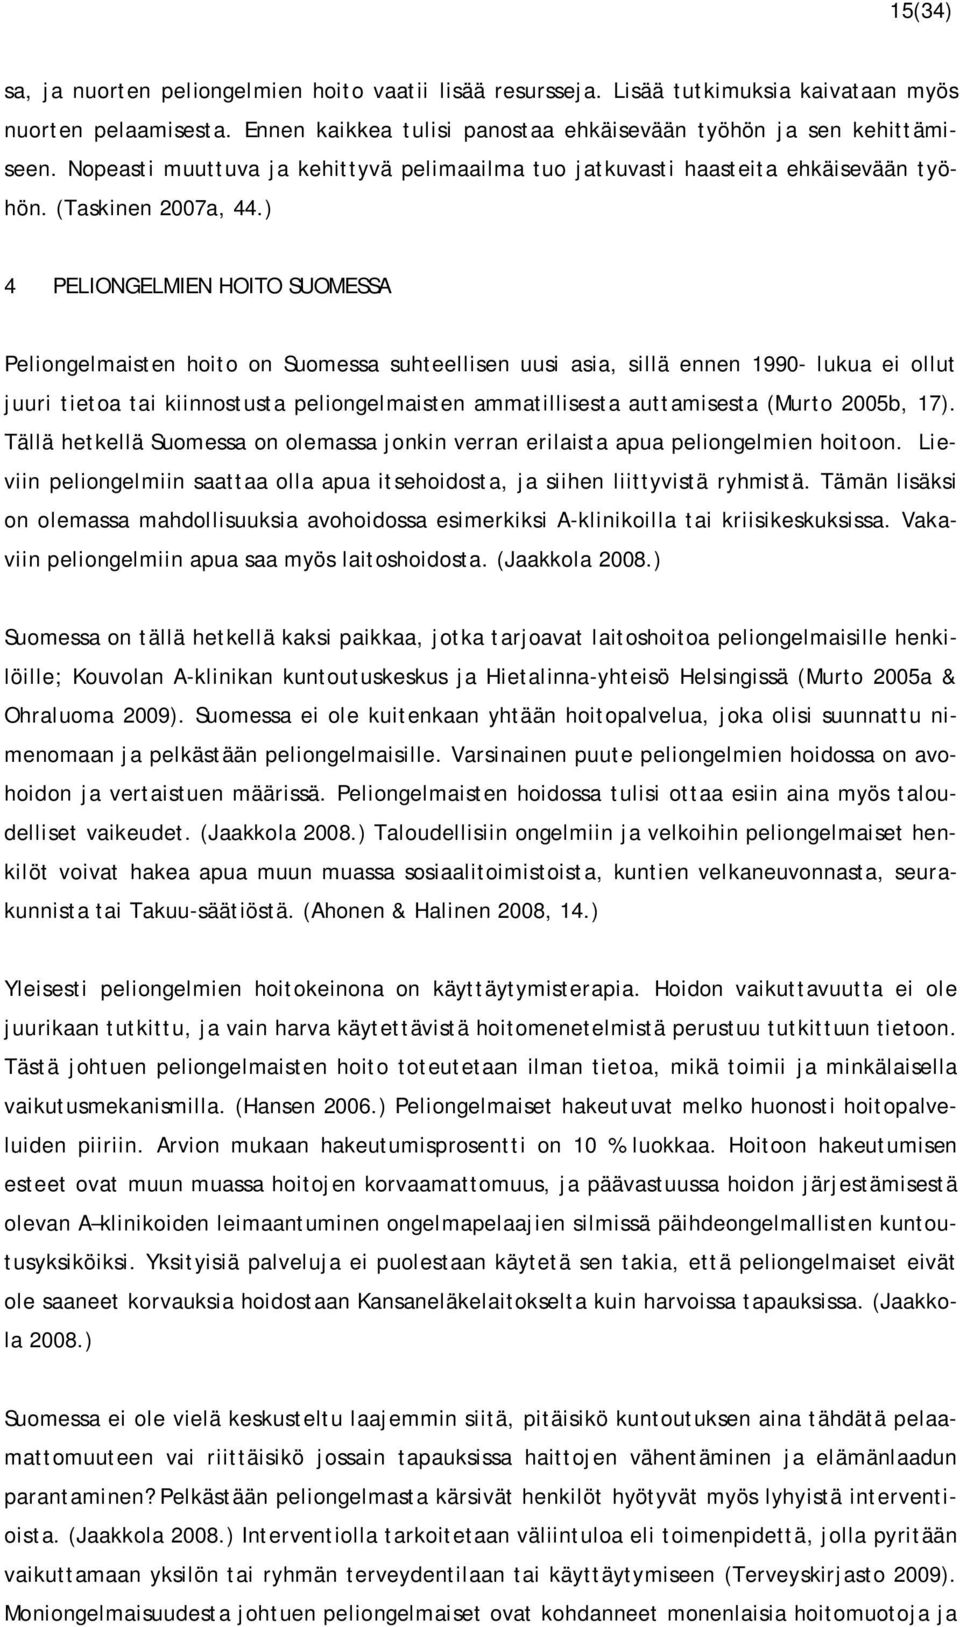 ) 4 PELIONGELMIEN HOITO SUOMESSA Peliongelmaisten hoito on Suomessa suhteellisen uusi asia, sillä ennen 1990- lukua ei ollut juuri tietoa tai kiinnostusta peliongelmaisten ammatillisesta auttamisesta